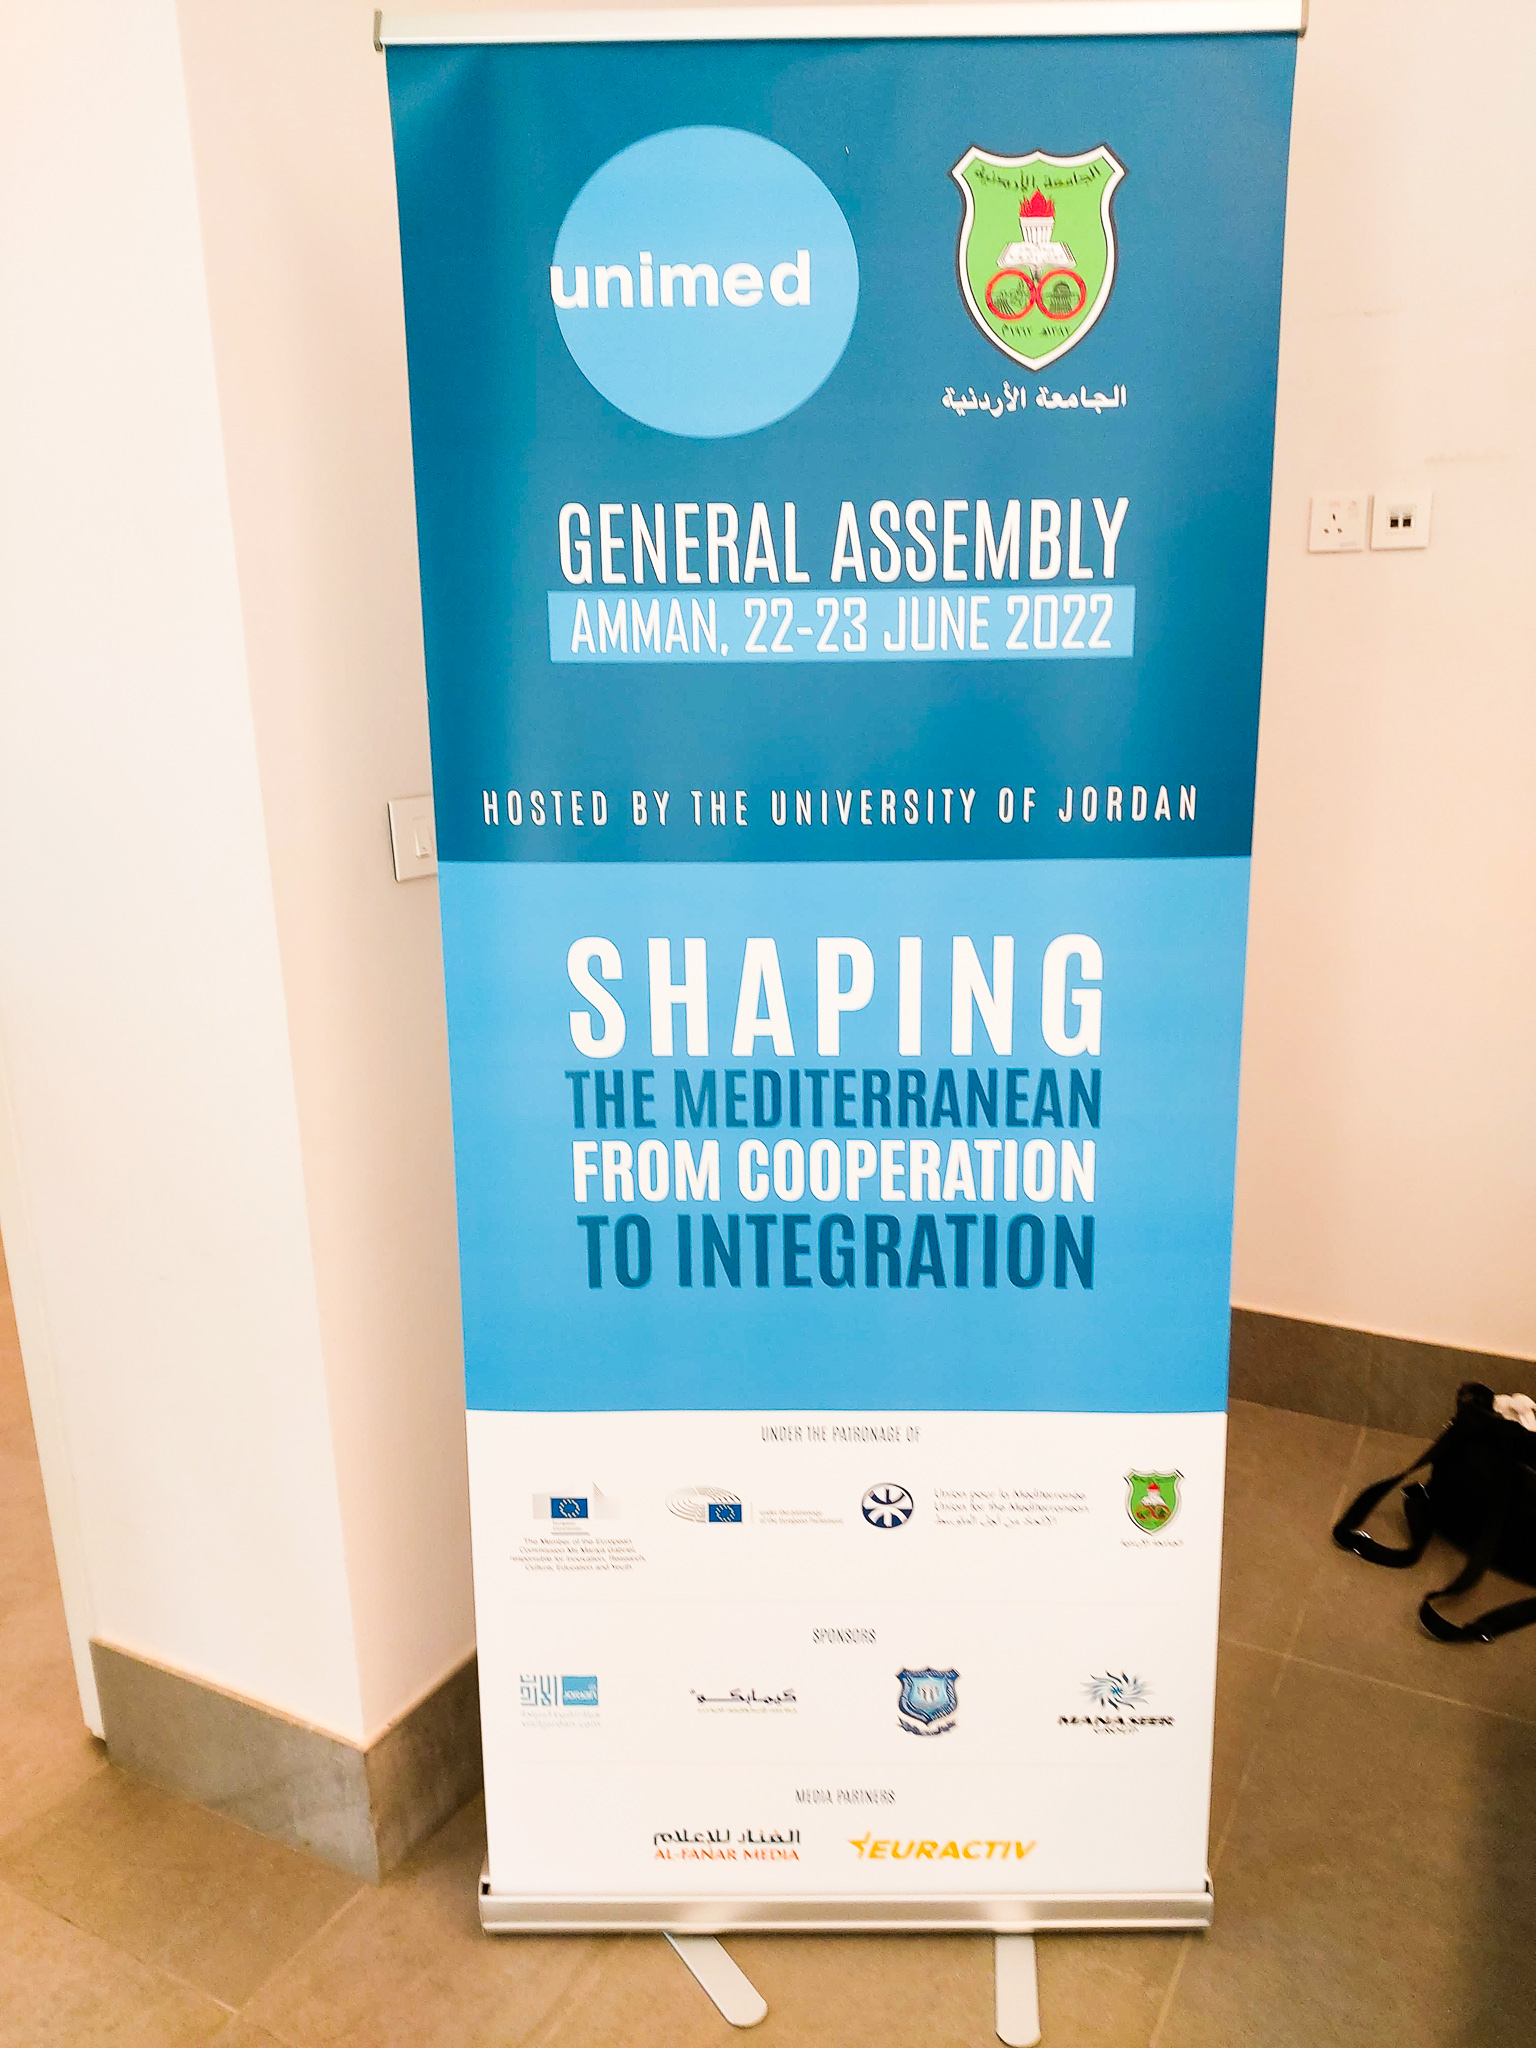 Foto del cartel de la Asamblea General de UNIMED 2022 